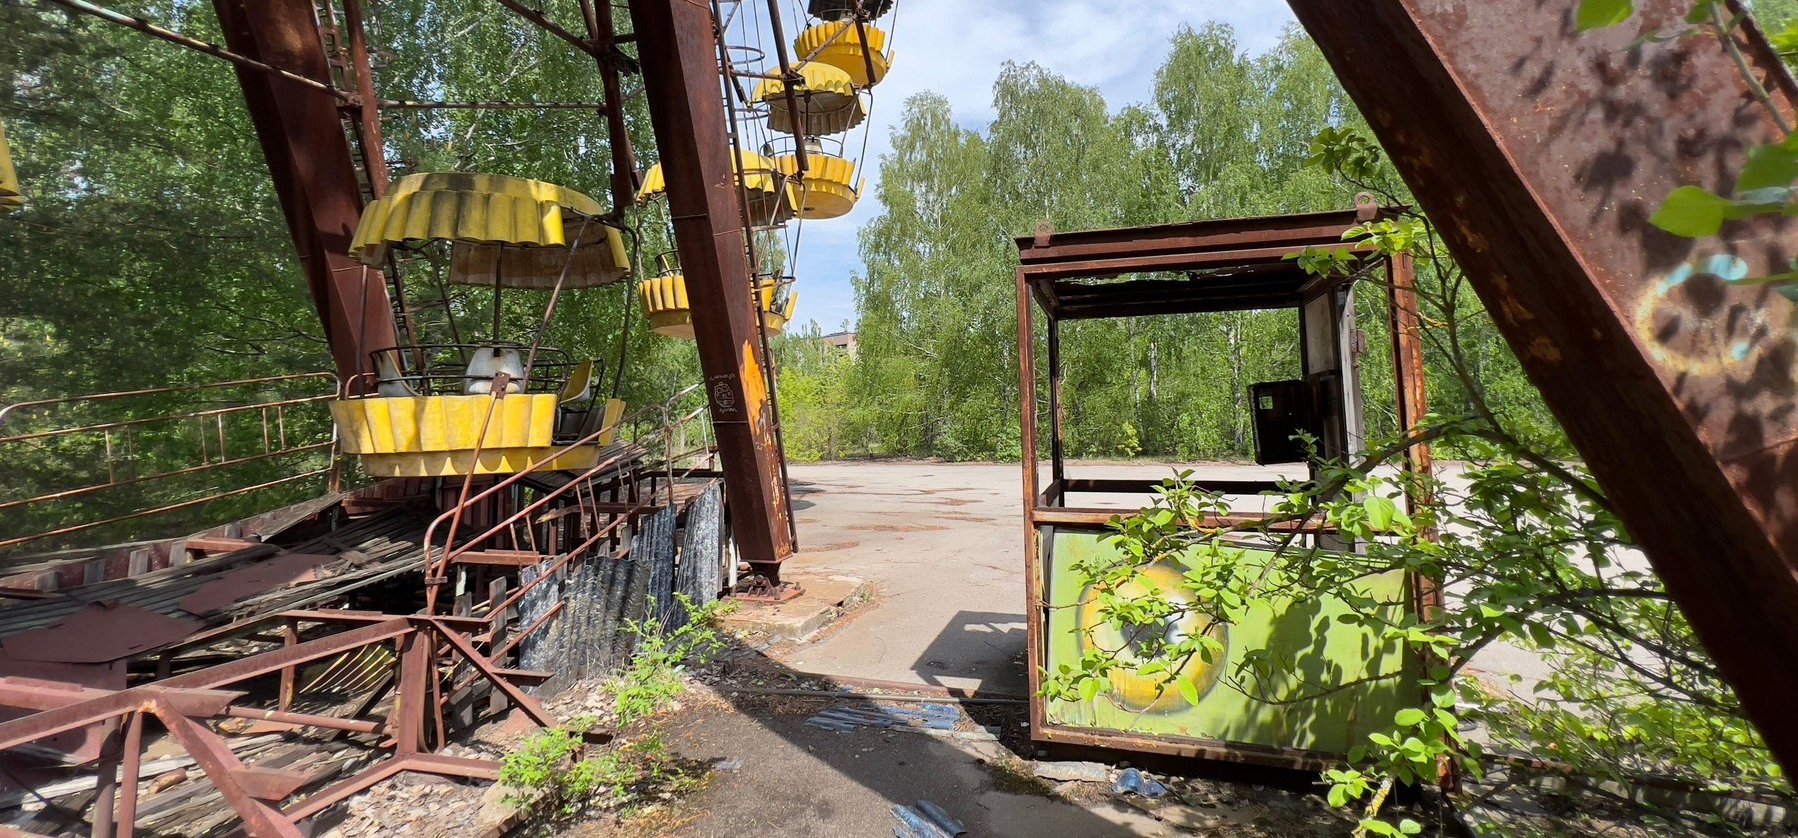 Csernobil mellett olyan lényeket találtak, amikre sokáig nem volt magyarázat, de évekkel később megvilágosodtak a kutatók